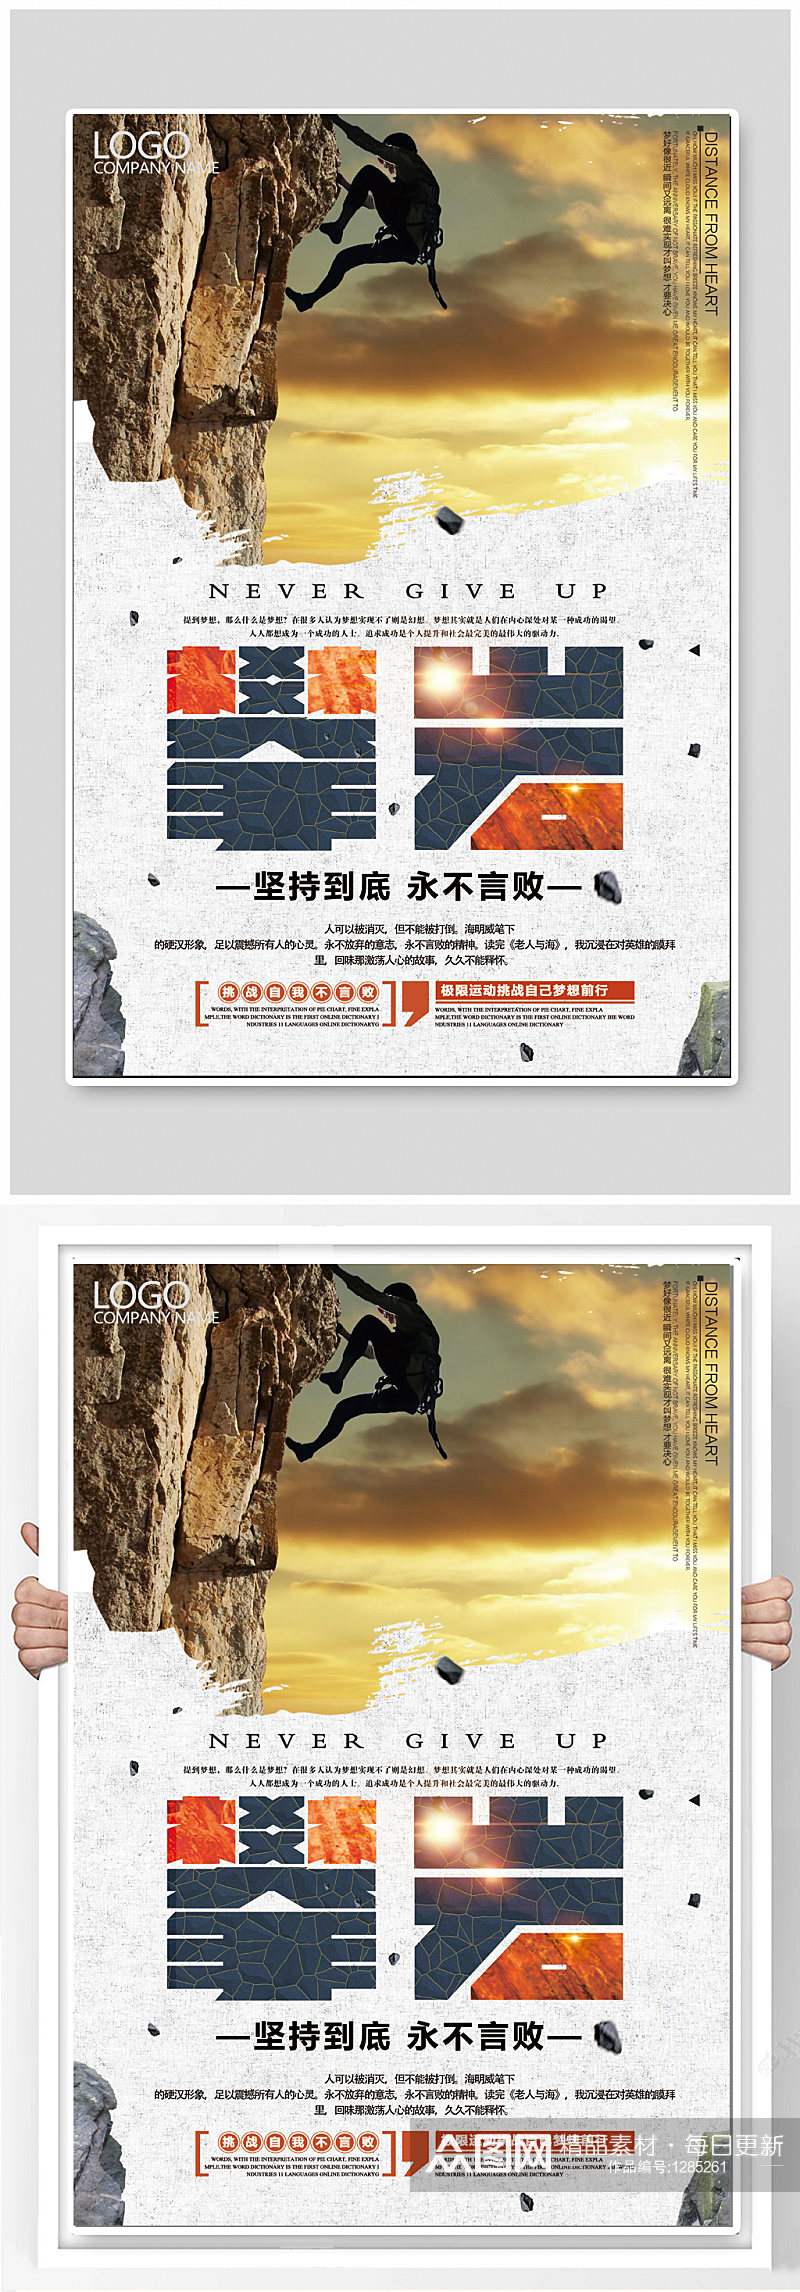 攀岩体育运动极限运动海报 攀登者宣传海报素材